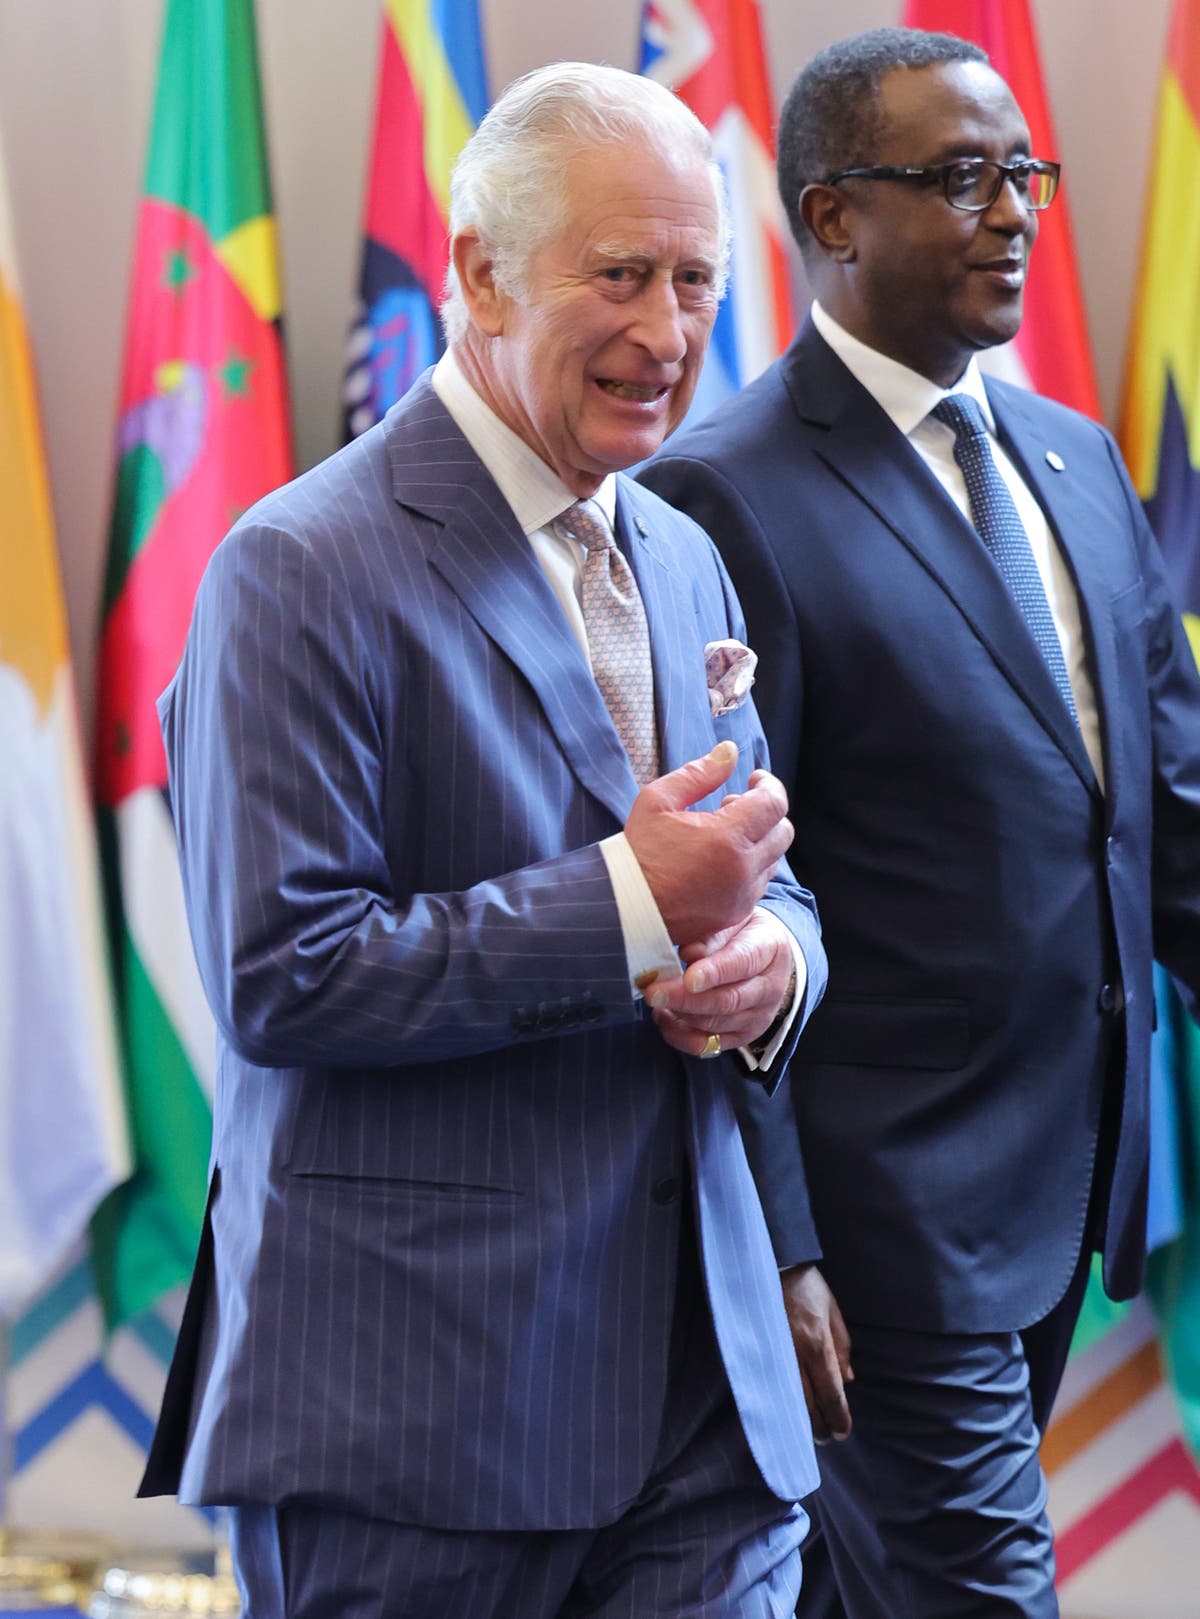 We must acknowledge past wrongs, Charles tells Commonwealth leaders